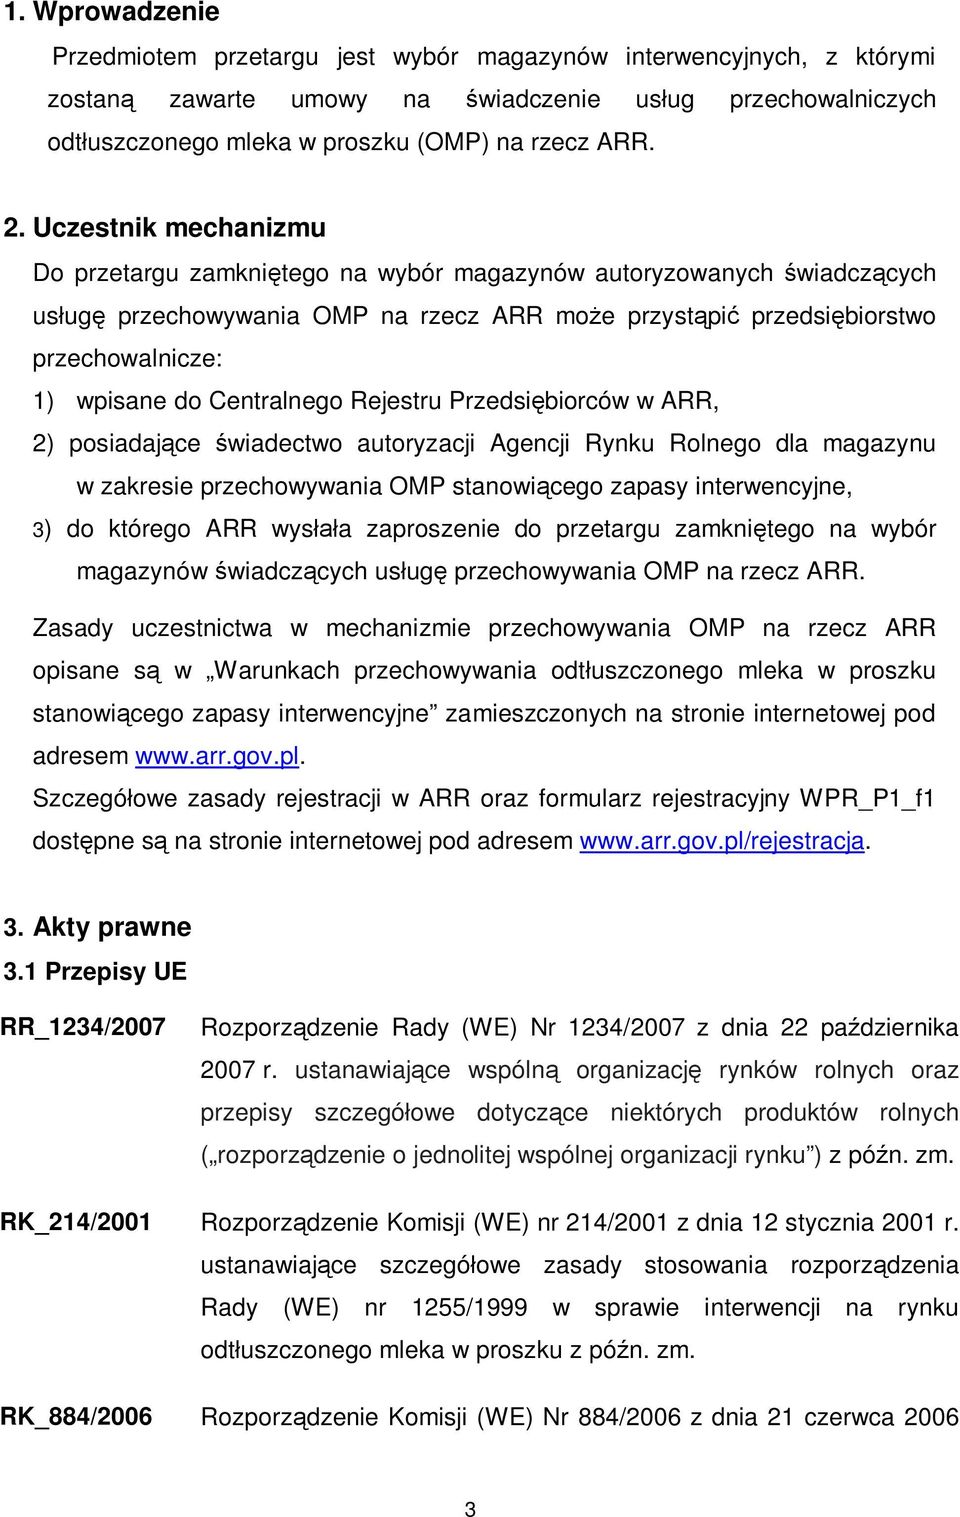 Centralnego Rejestru Przedsiębiorców w ARR, 2) posiadające świadectwo autoryzacji Agencji Rynku Rolnego dla magazynu w zakresie przechowywania OMP stanowiącego zapasy interwencyjne, 3) do którego ARR